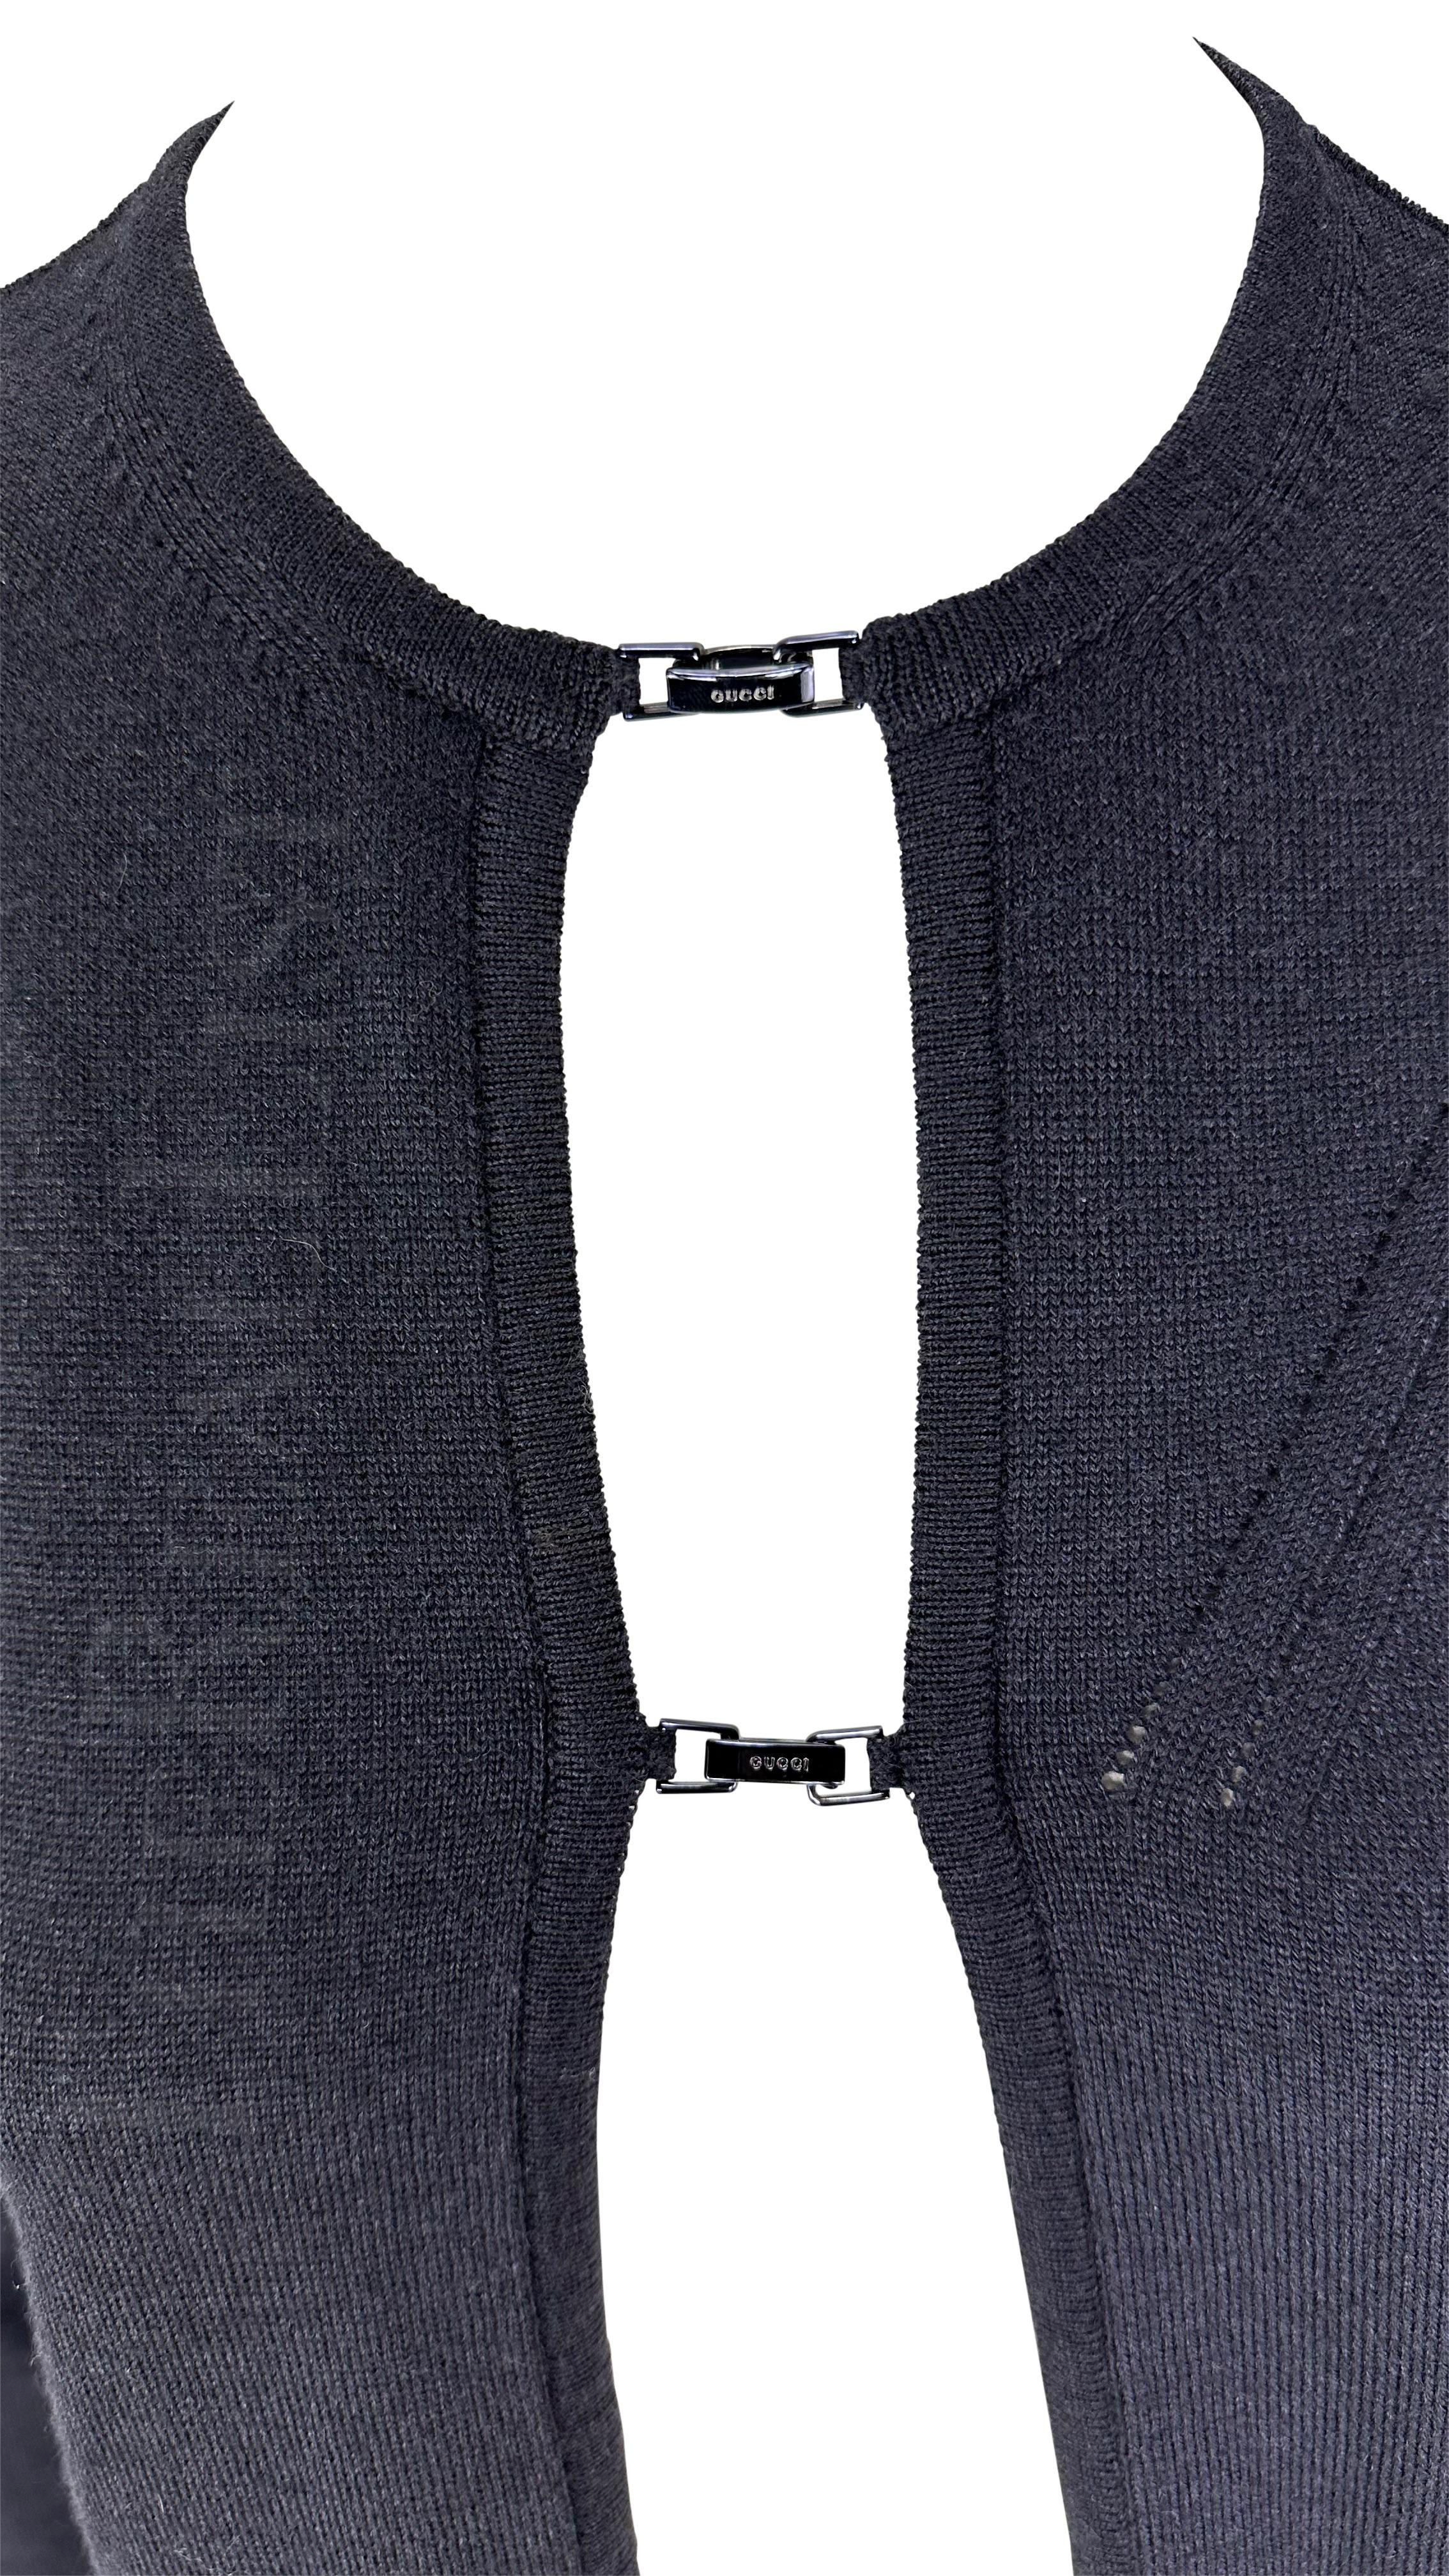 Présentation d'un cardigan Gucci en maille noire ouverte, dessiné par Tom Ford. Issu de la Collectional Automne/Hiver 1998, cet incroyable cardigan est doté de deux fermetures sur le devant, chacune marquée 'Gucci', qui laissent avec tact le pull